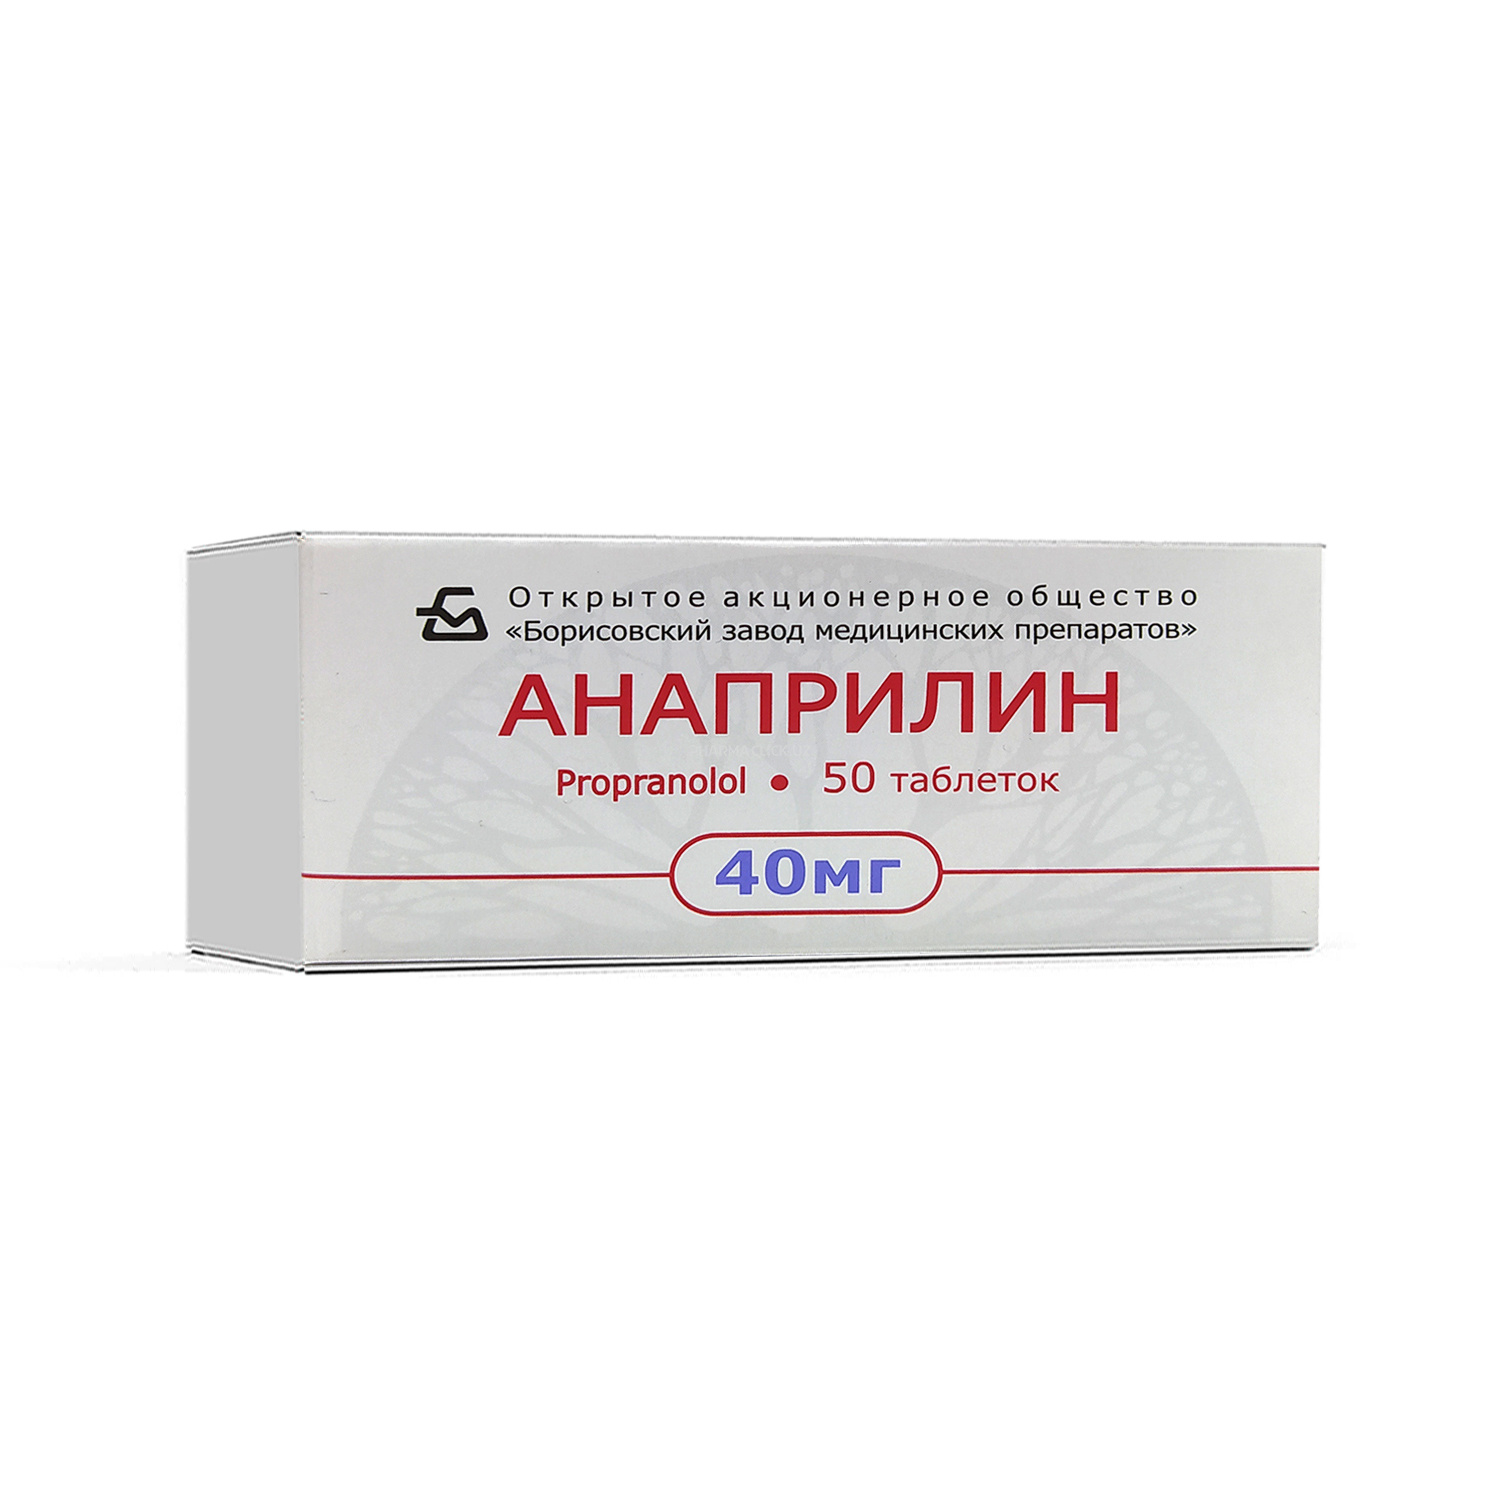 Анаприлин 40 мг №50 таб.